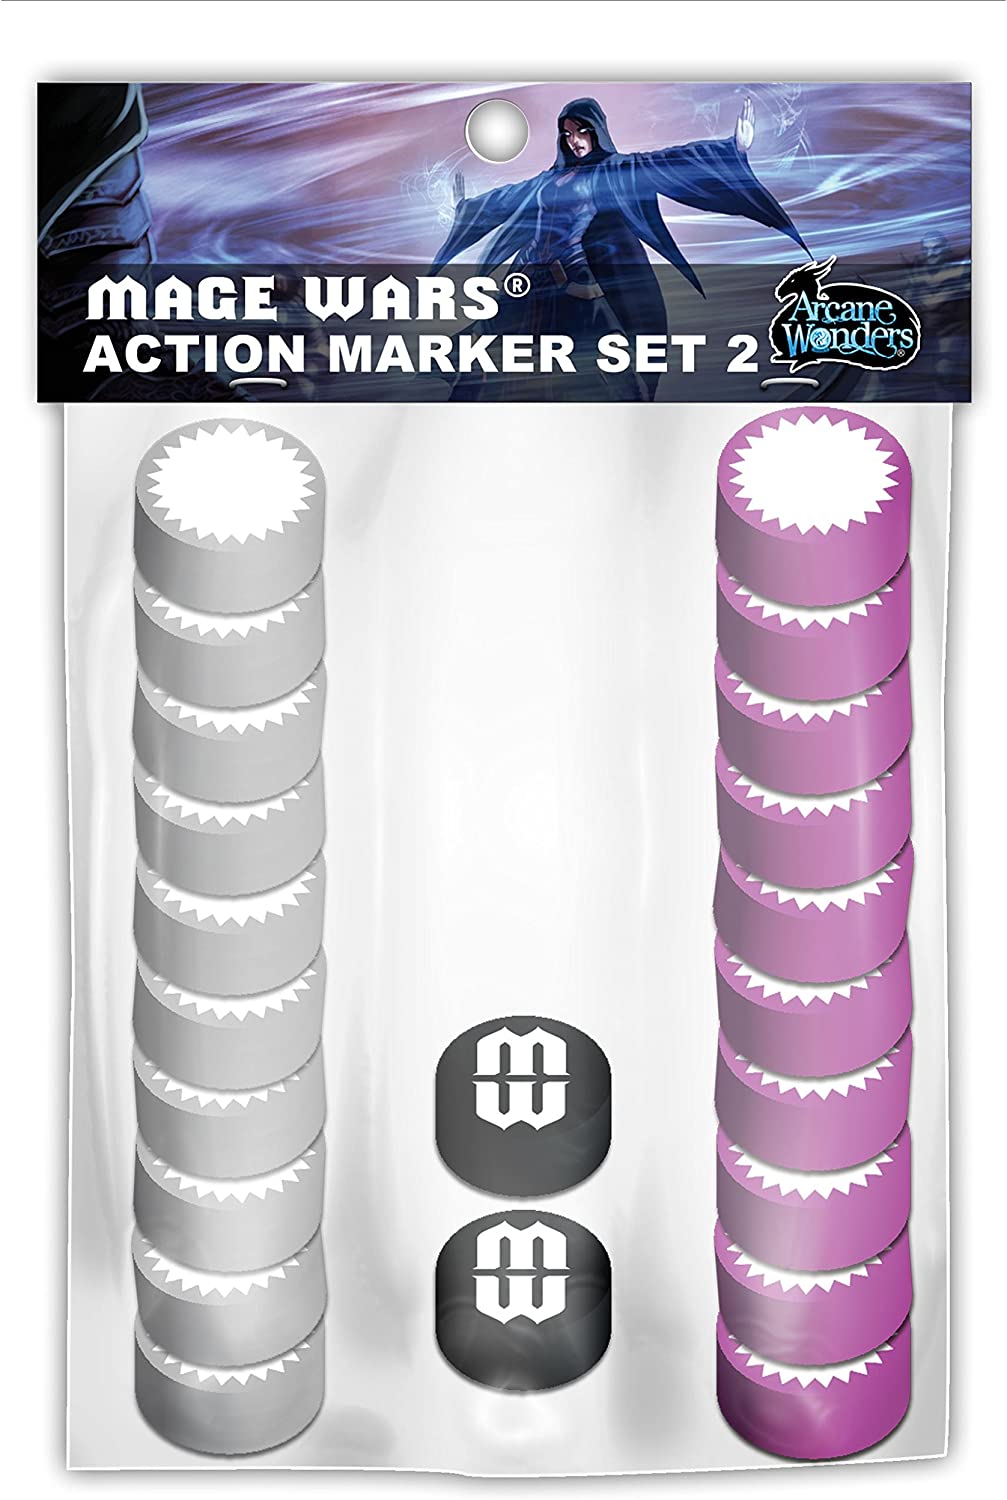 Arcane Wonders "Mage Wars Action Marker Set 2" Board Game